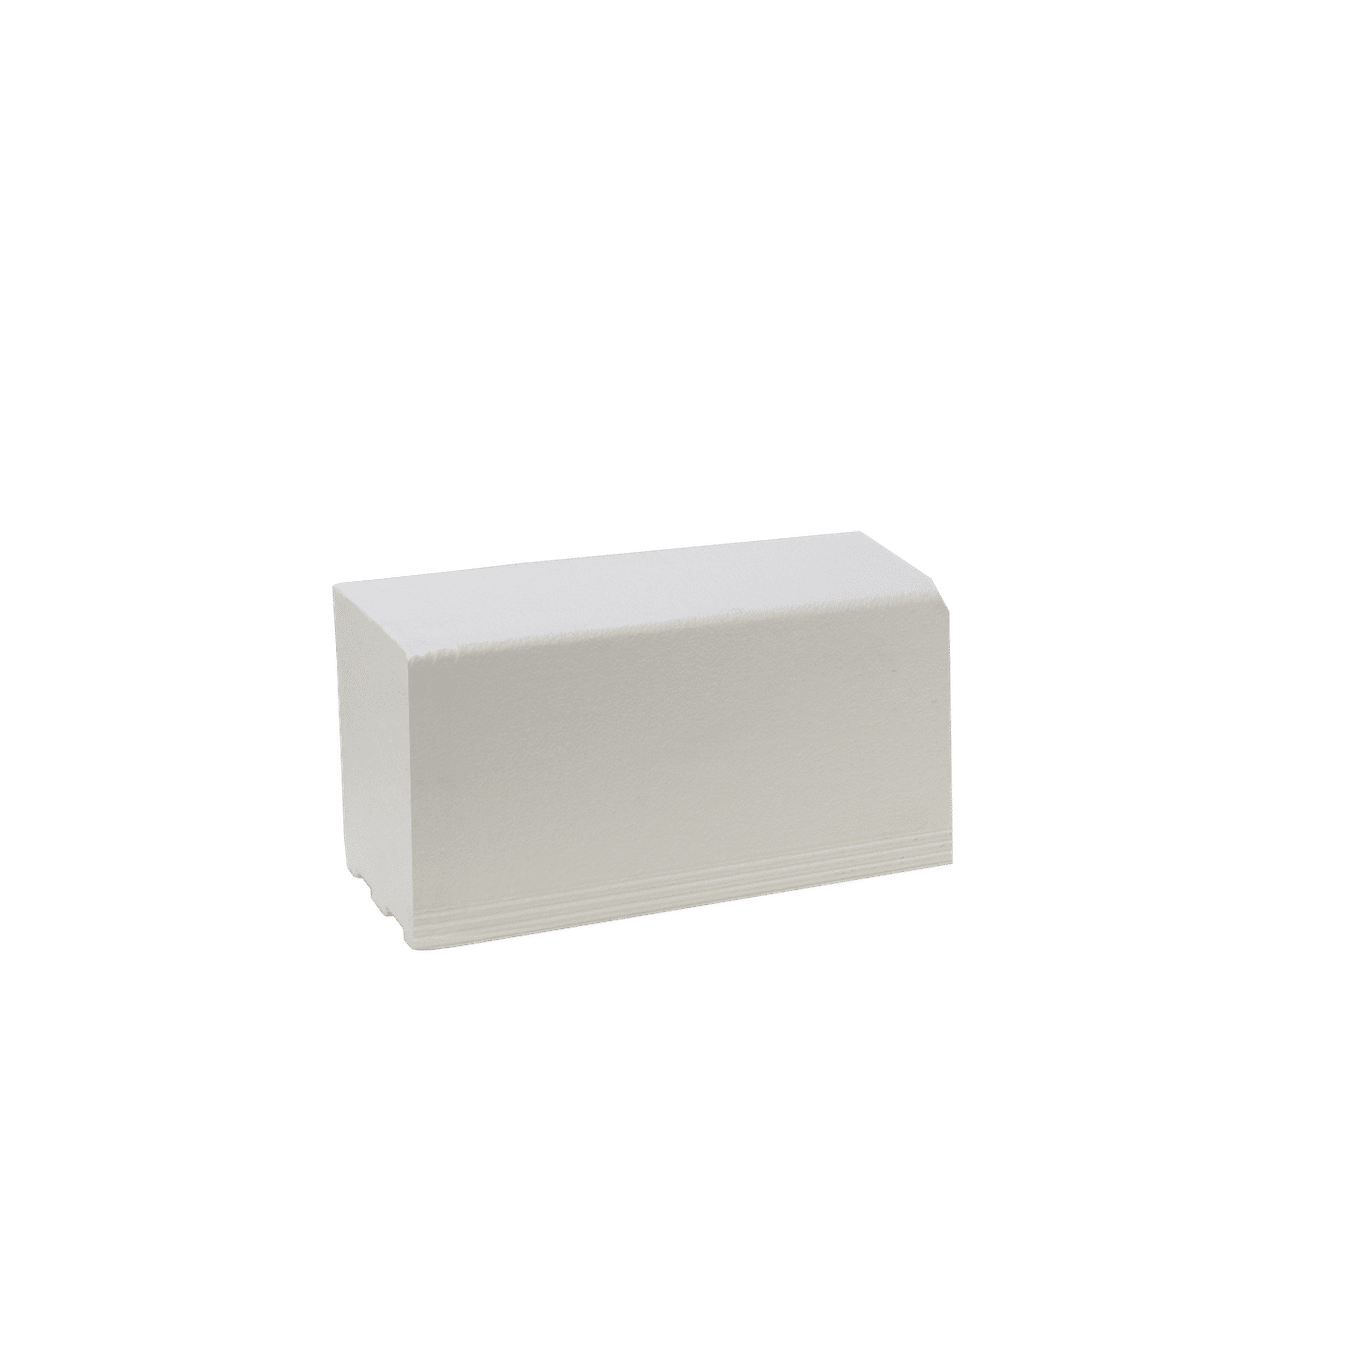 Pro GEN II Solid Polystyrene Shower Curb - 2' Long